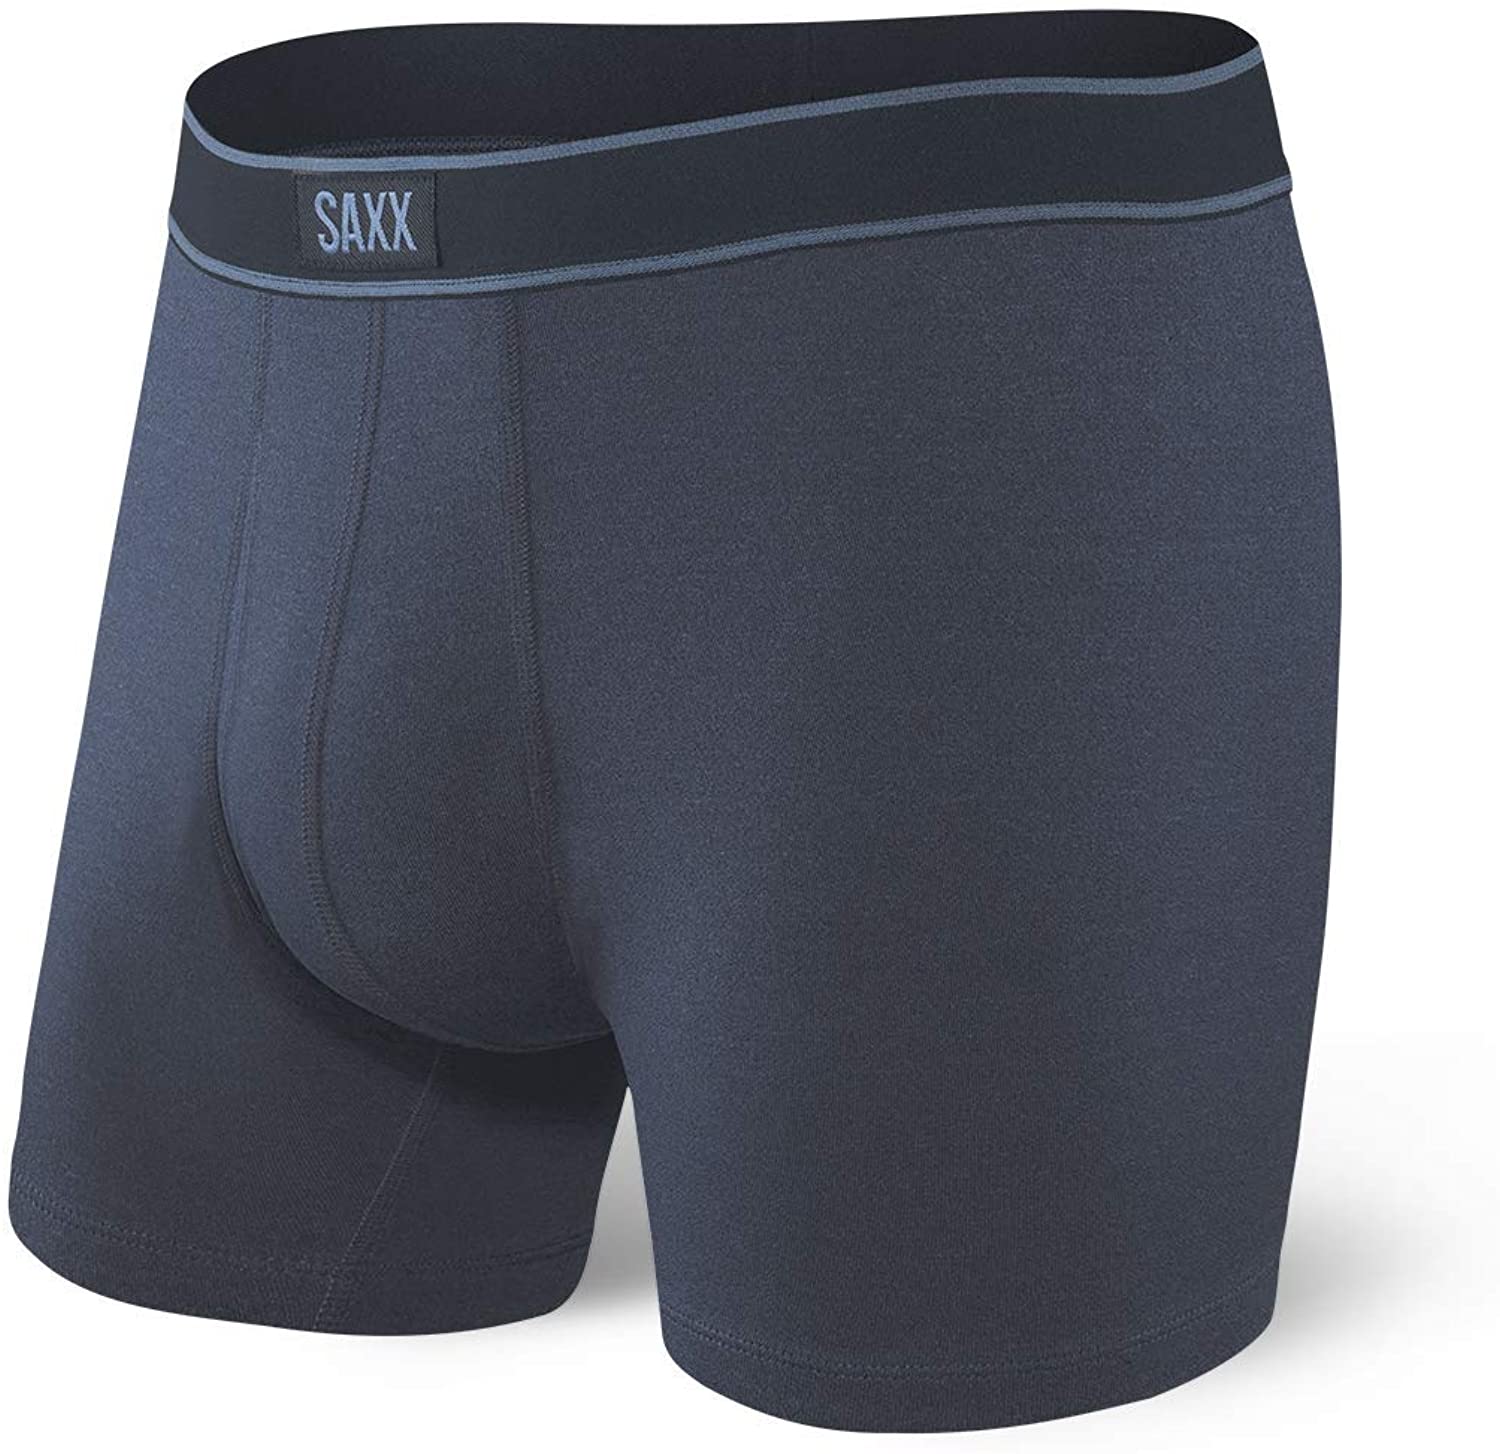 Saxx Underwear Men's Boxer Briefs - Daytripper Boxer Briefs, Navy, Size ...